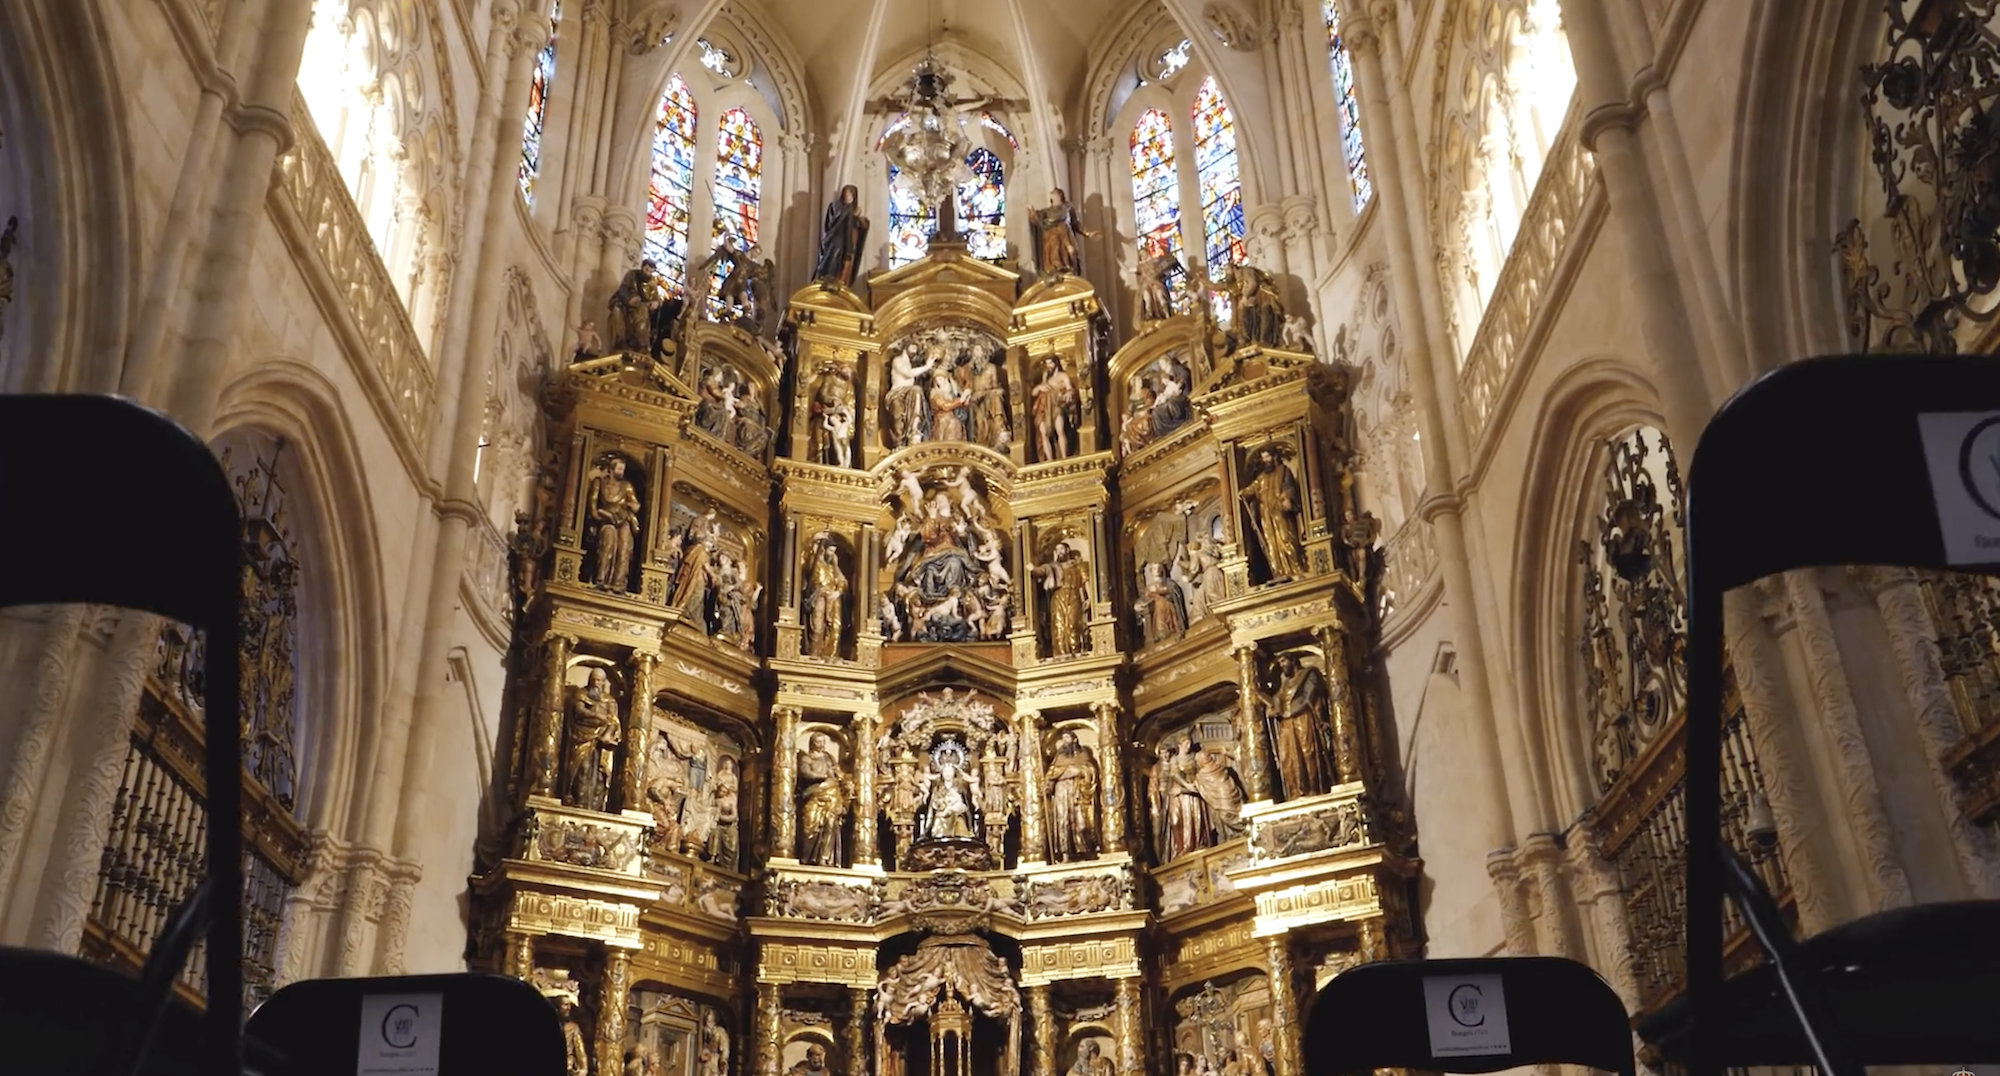 El Valor de la Comunicacion - Monsenor Iceta en Good Talks -by Mary de Sojo - Retablo- Catedral de Burgos